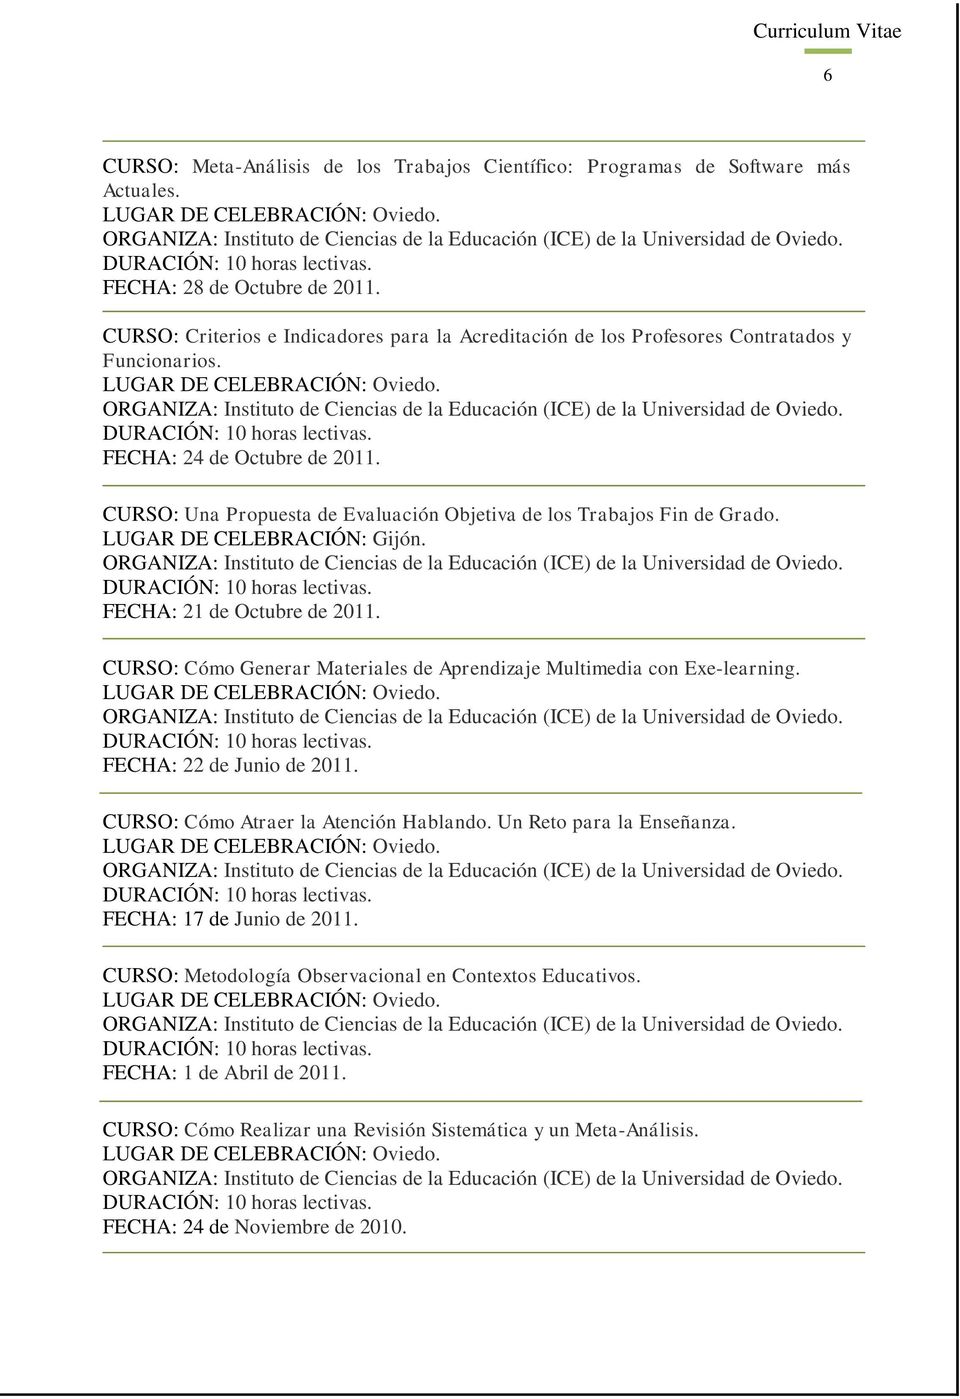 CURSO: Una Propuesta de Evaluación Objetiva de los Trabajos Fin de Grado. LUGAR DE CELEBRACIÓN: Gijón. FECHA: 21 de Octubre de 2011.